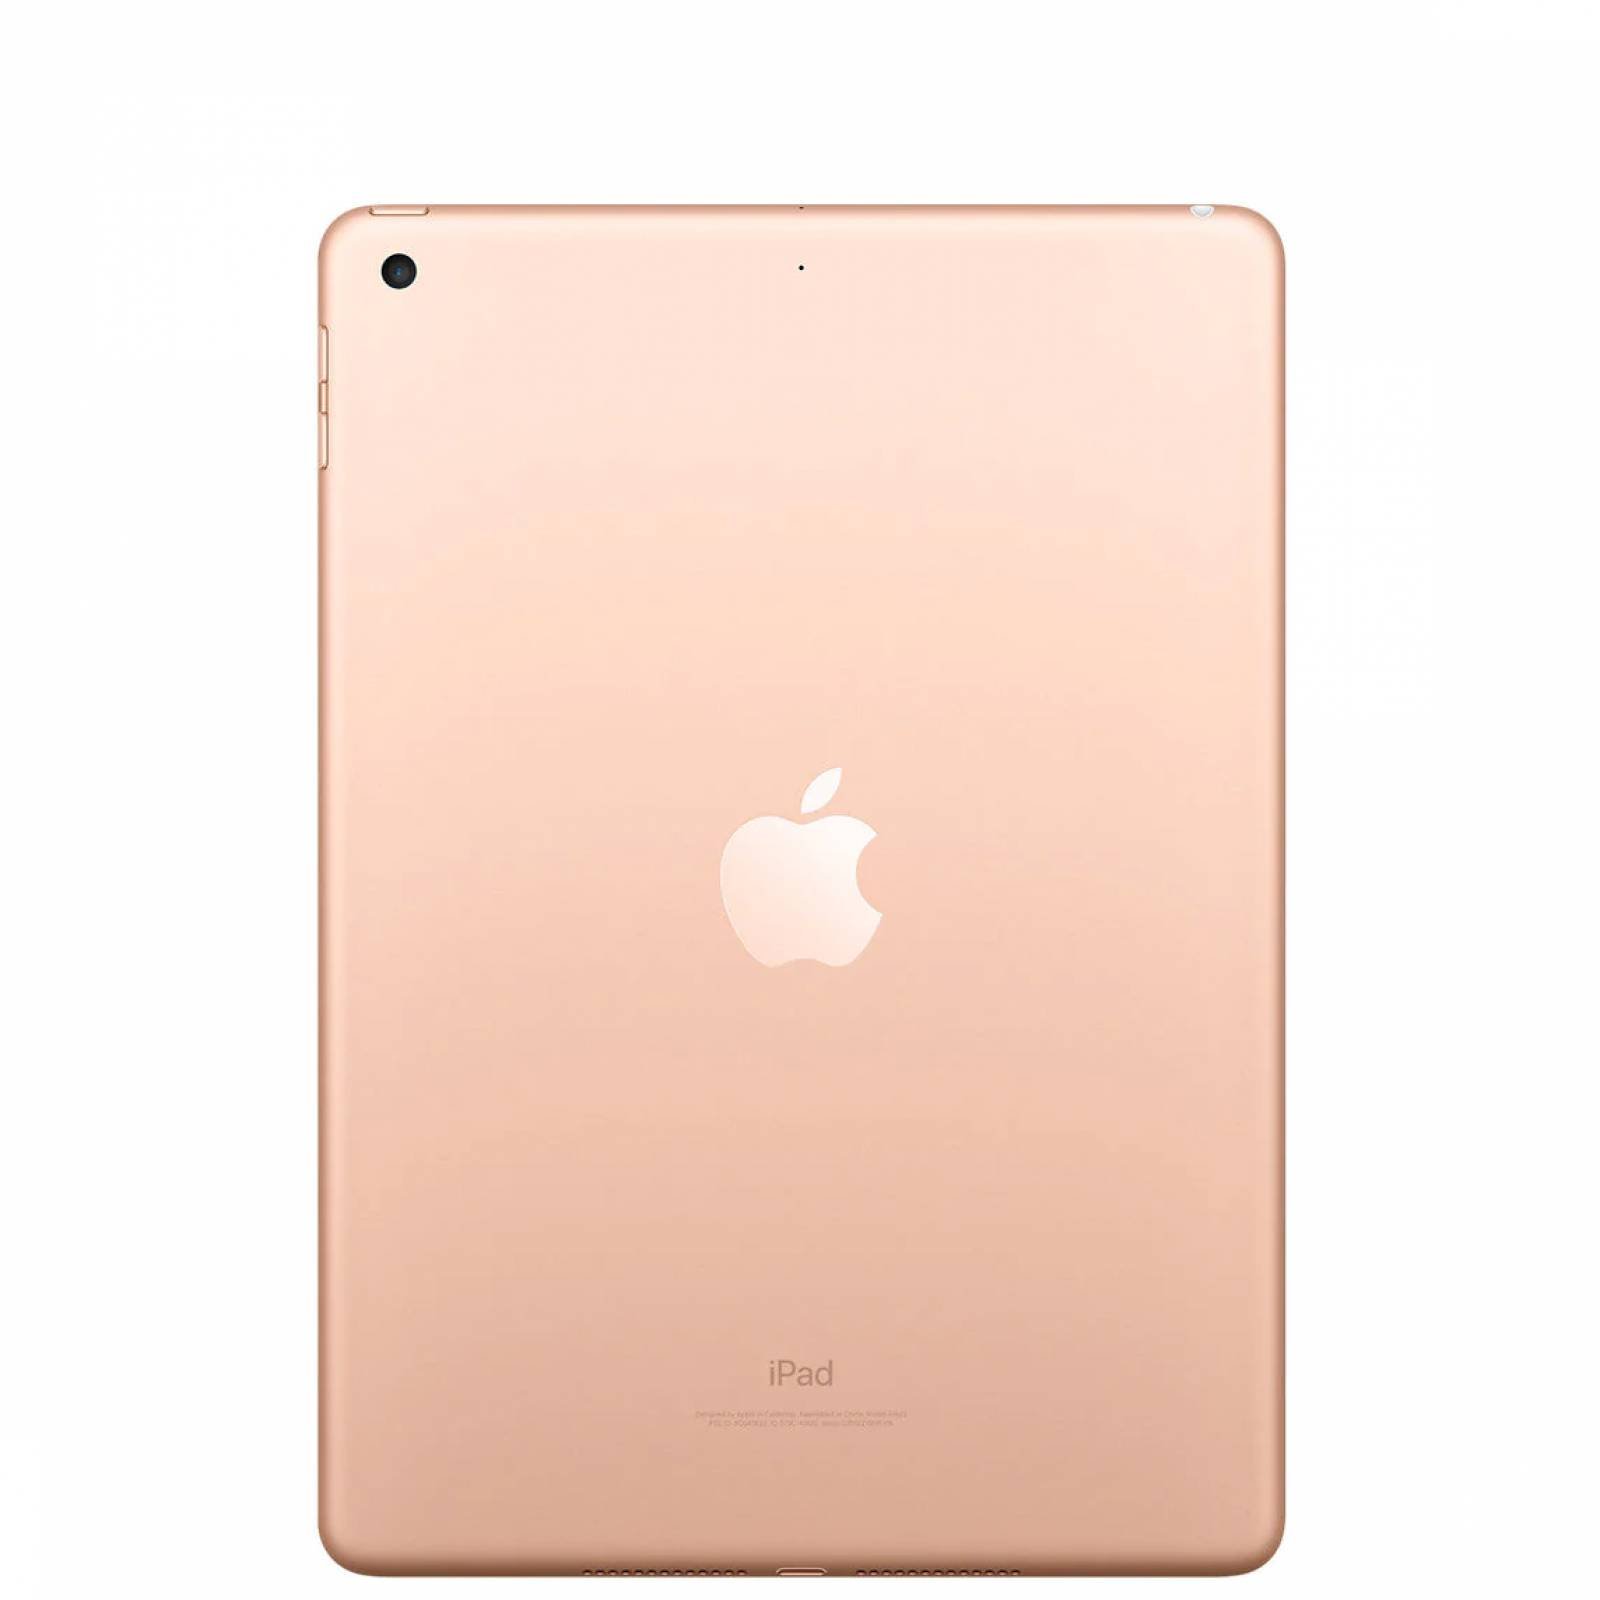 Tablet (Reacondicionado Grado A) Apple iPad 6ta Gen 9 7 pulgadas 128GB (Oro Rosado)